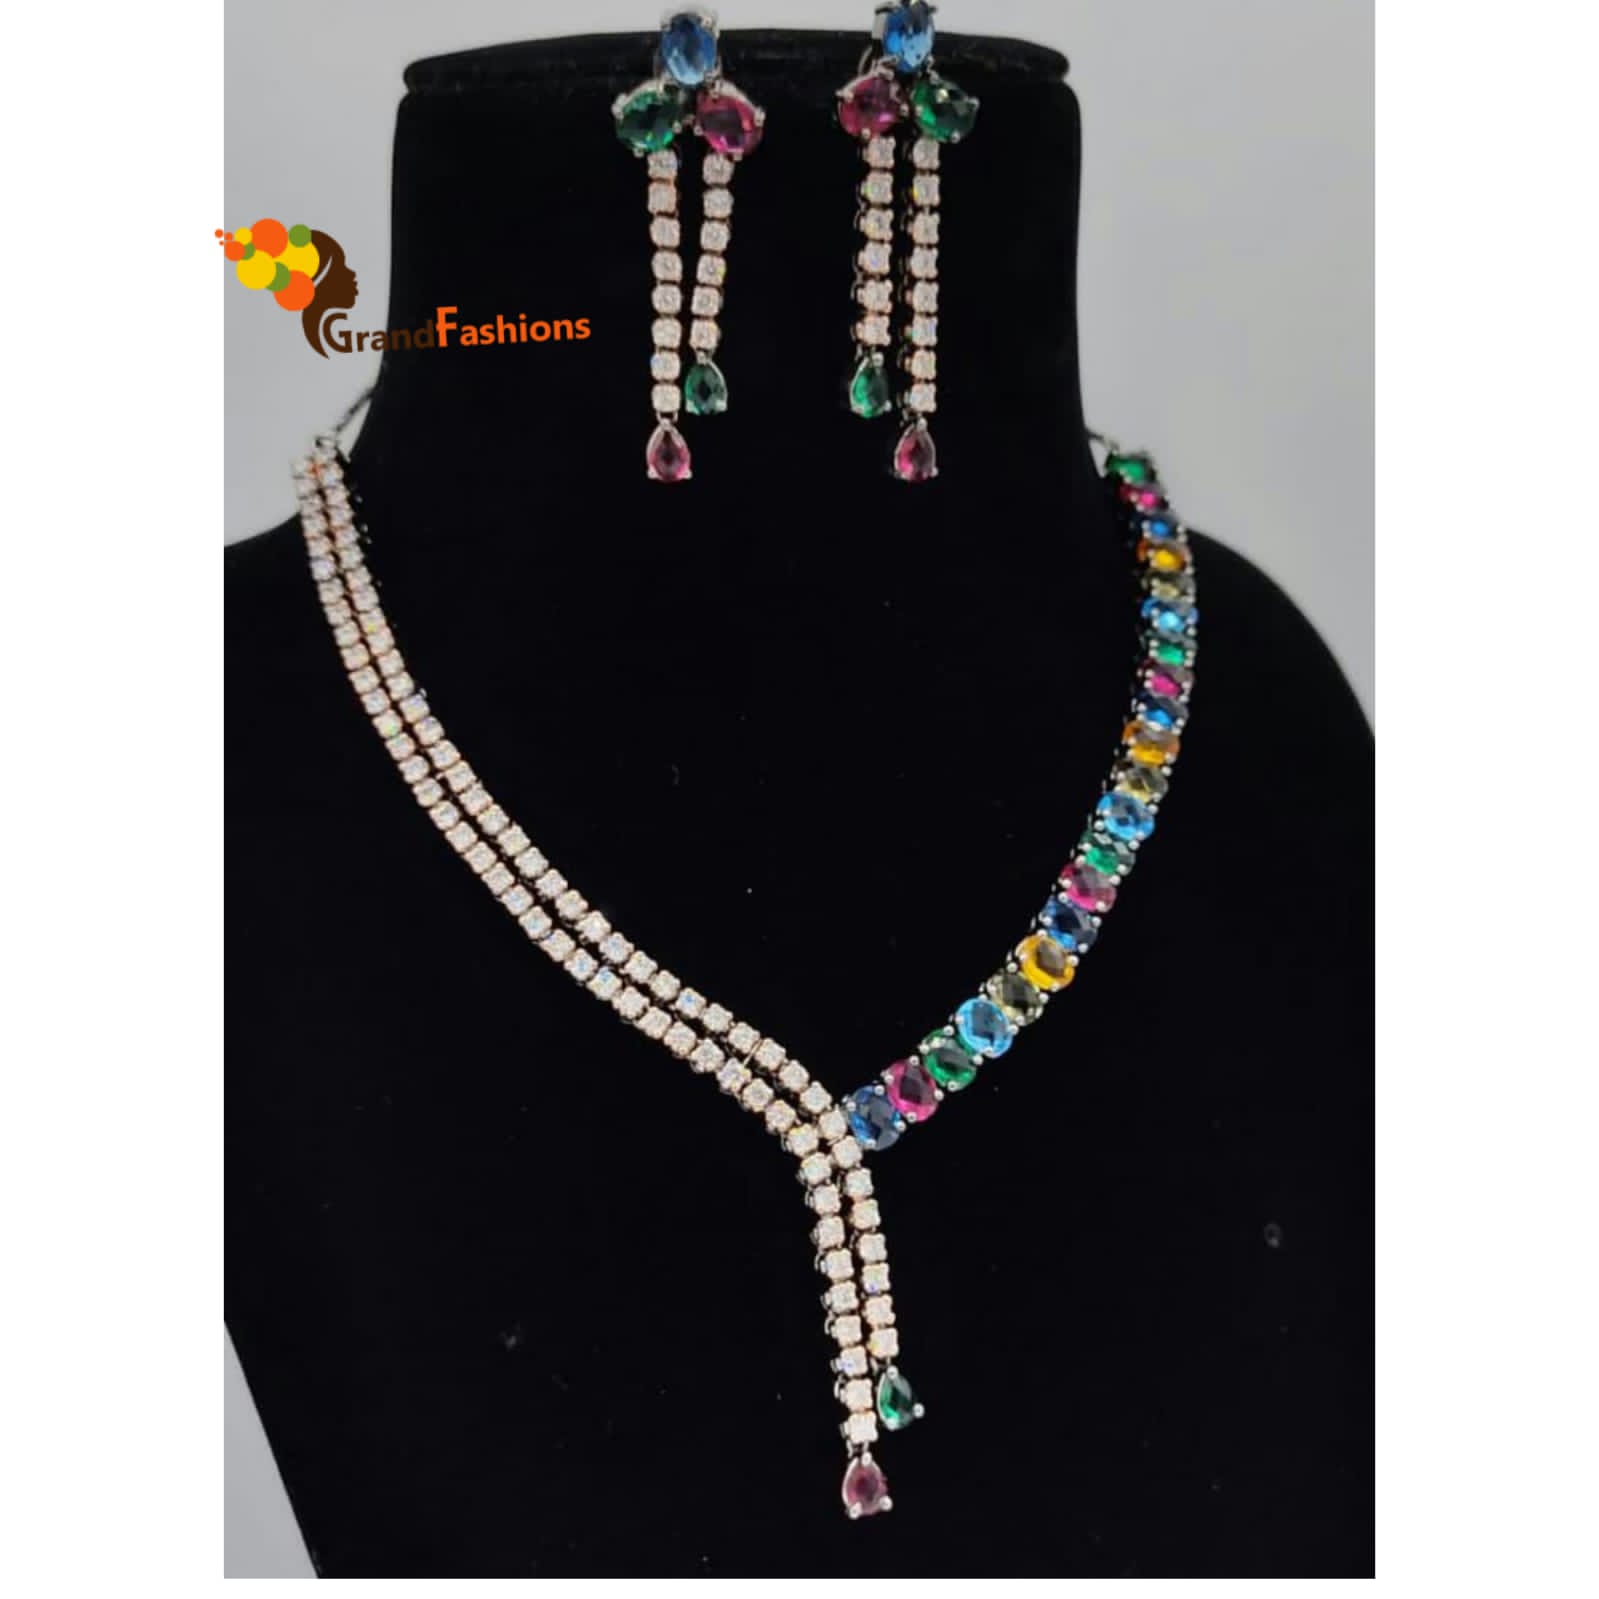 Queen Elisa Premium Luxury Necklace Set with Gemstones